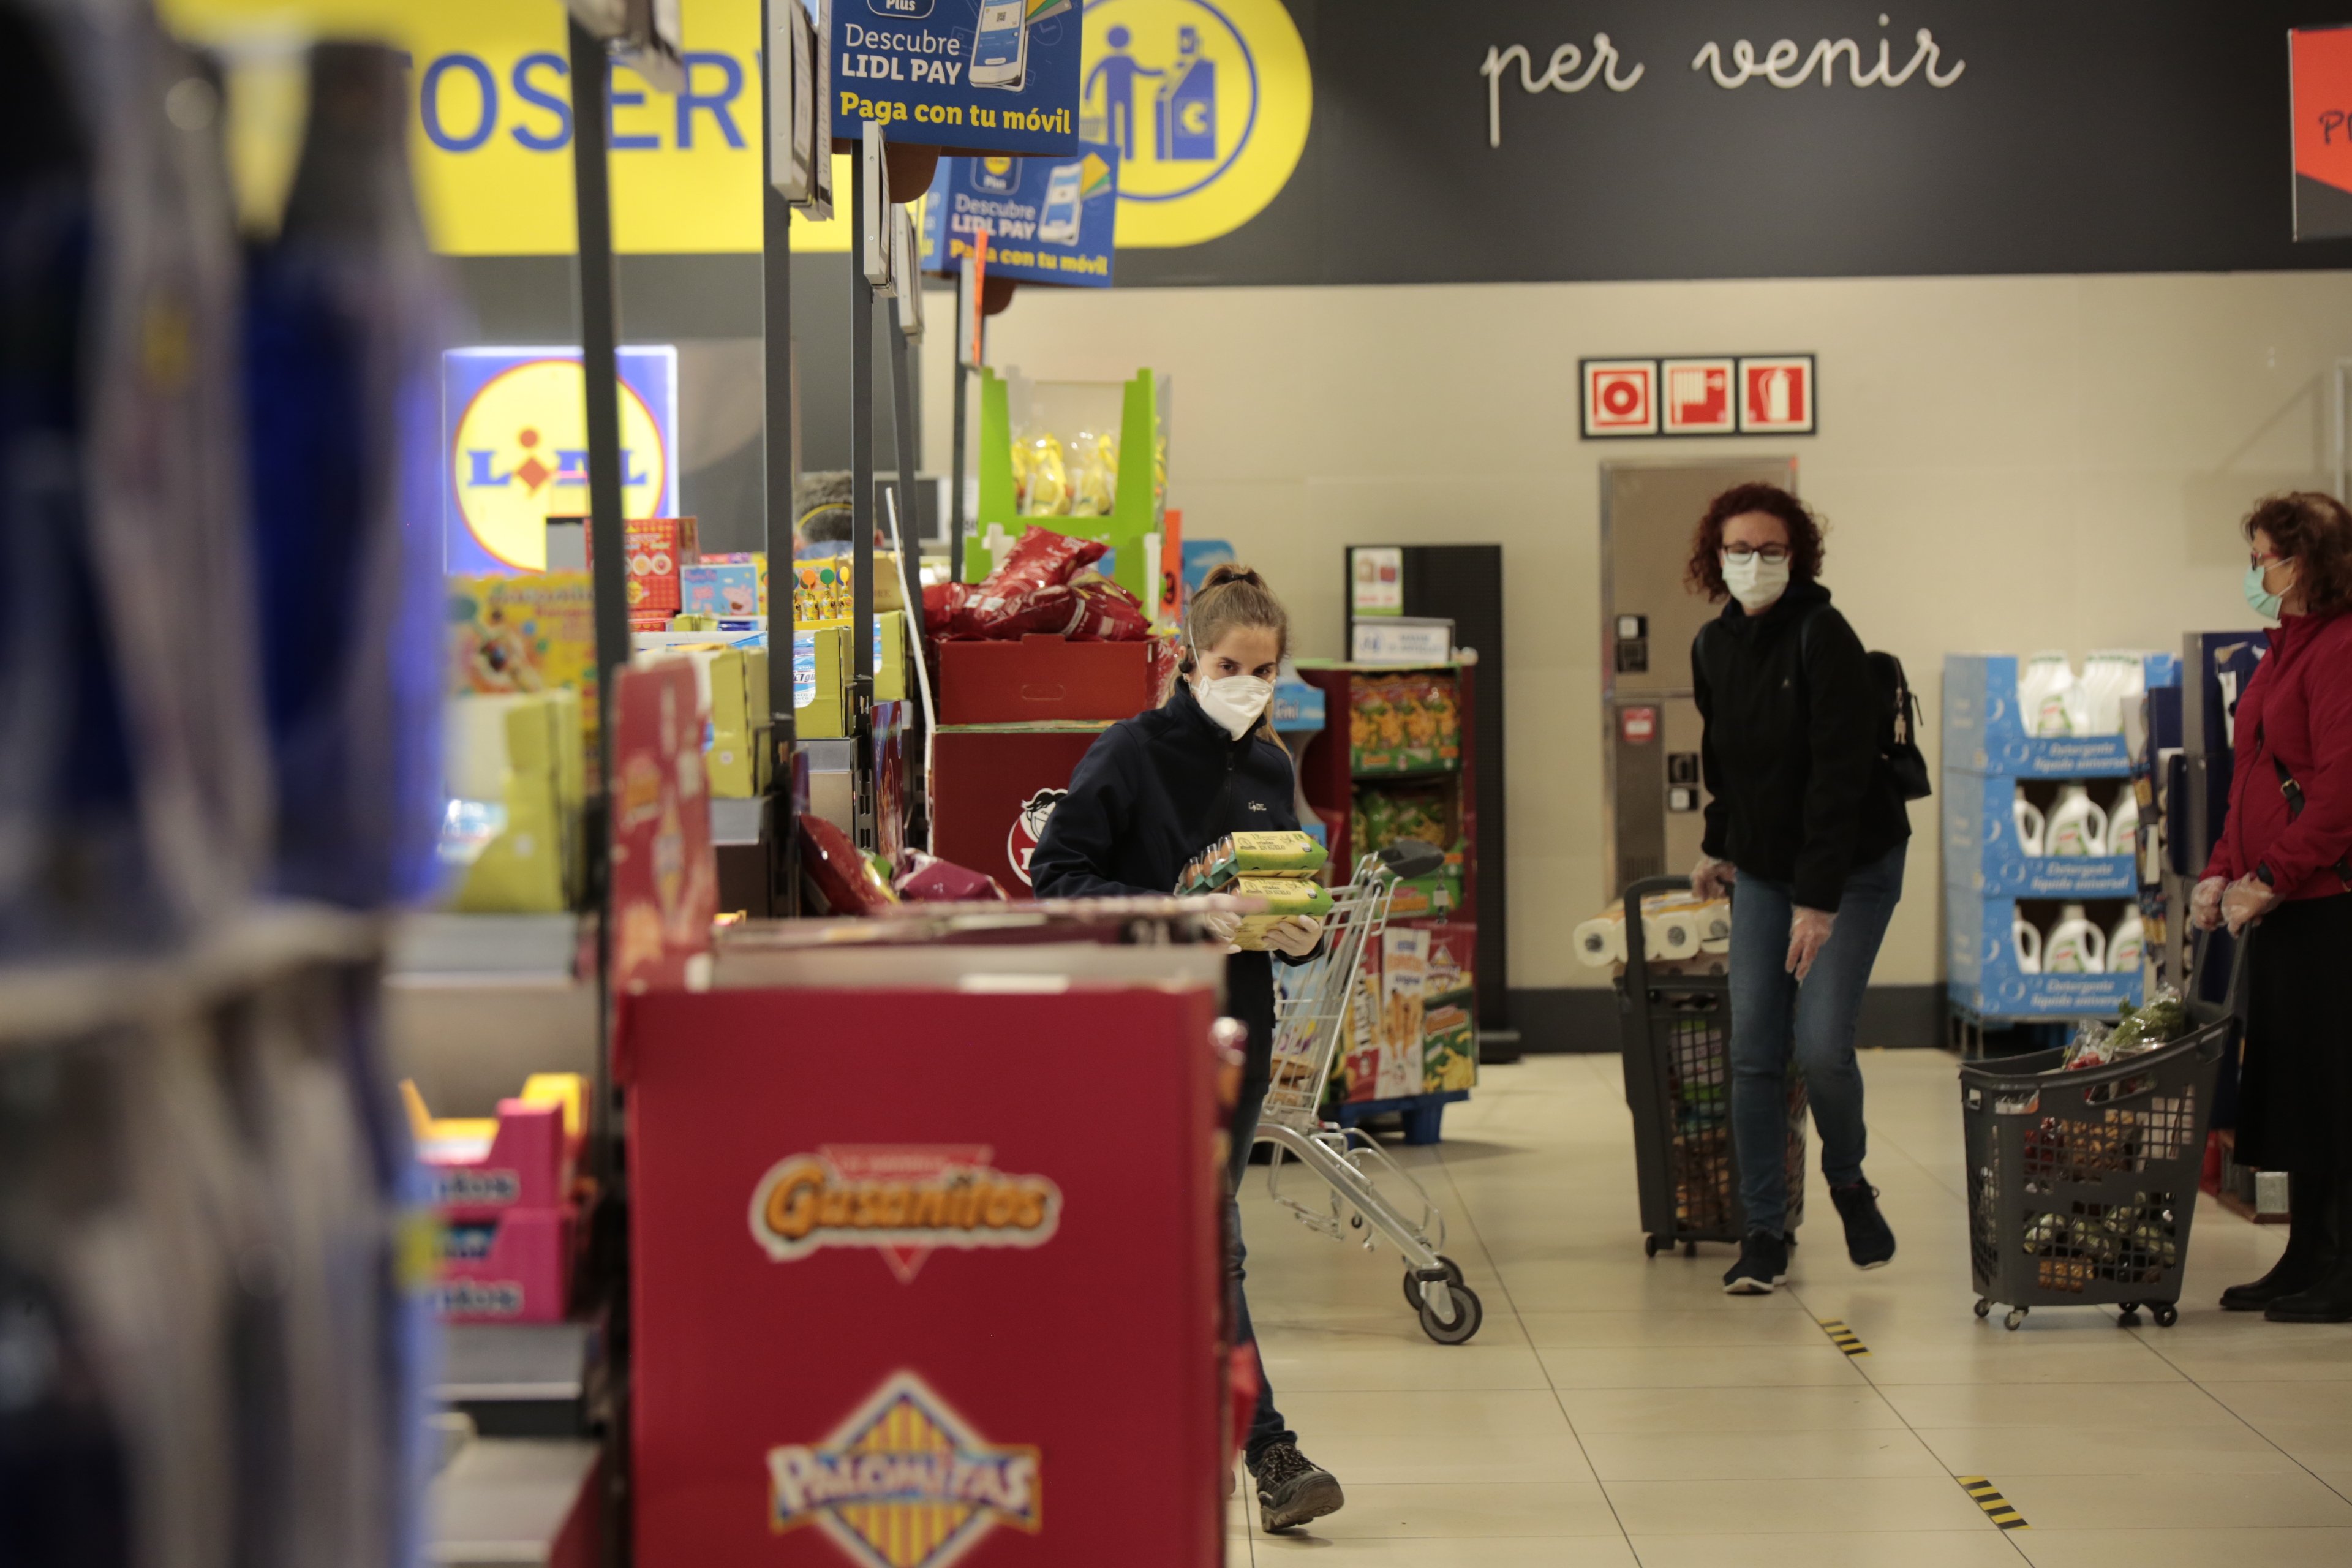 VÍDEO | Així s'escampa el coronavirus per l'interior d'un supermercat